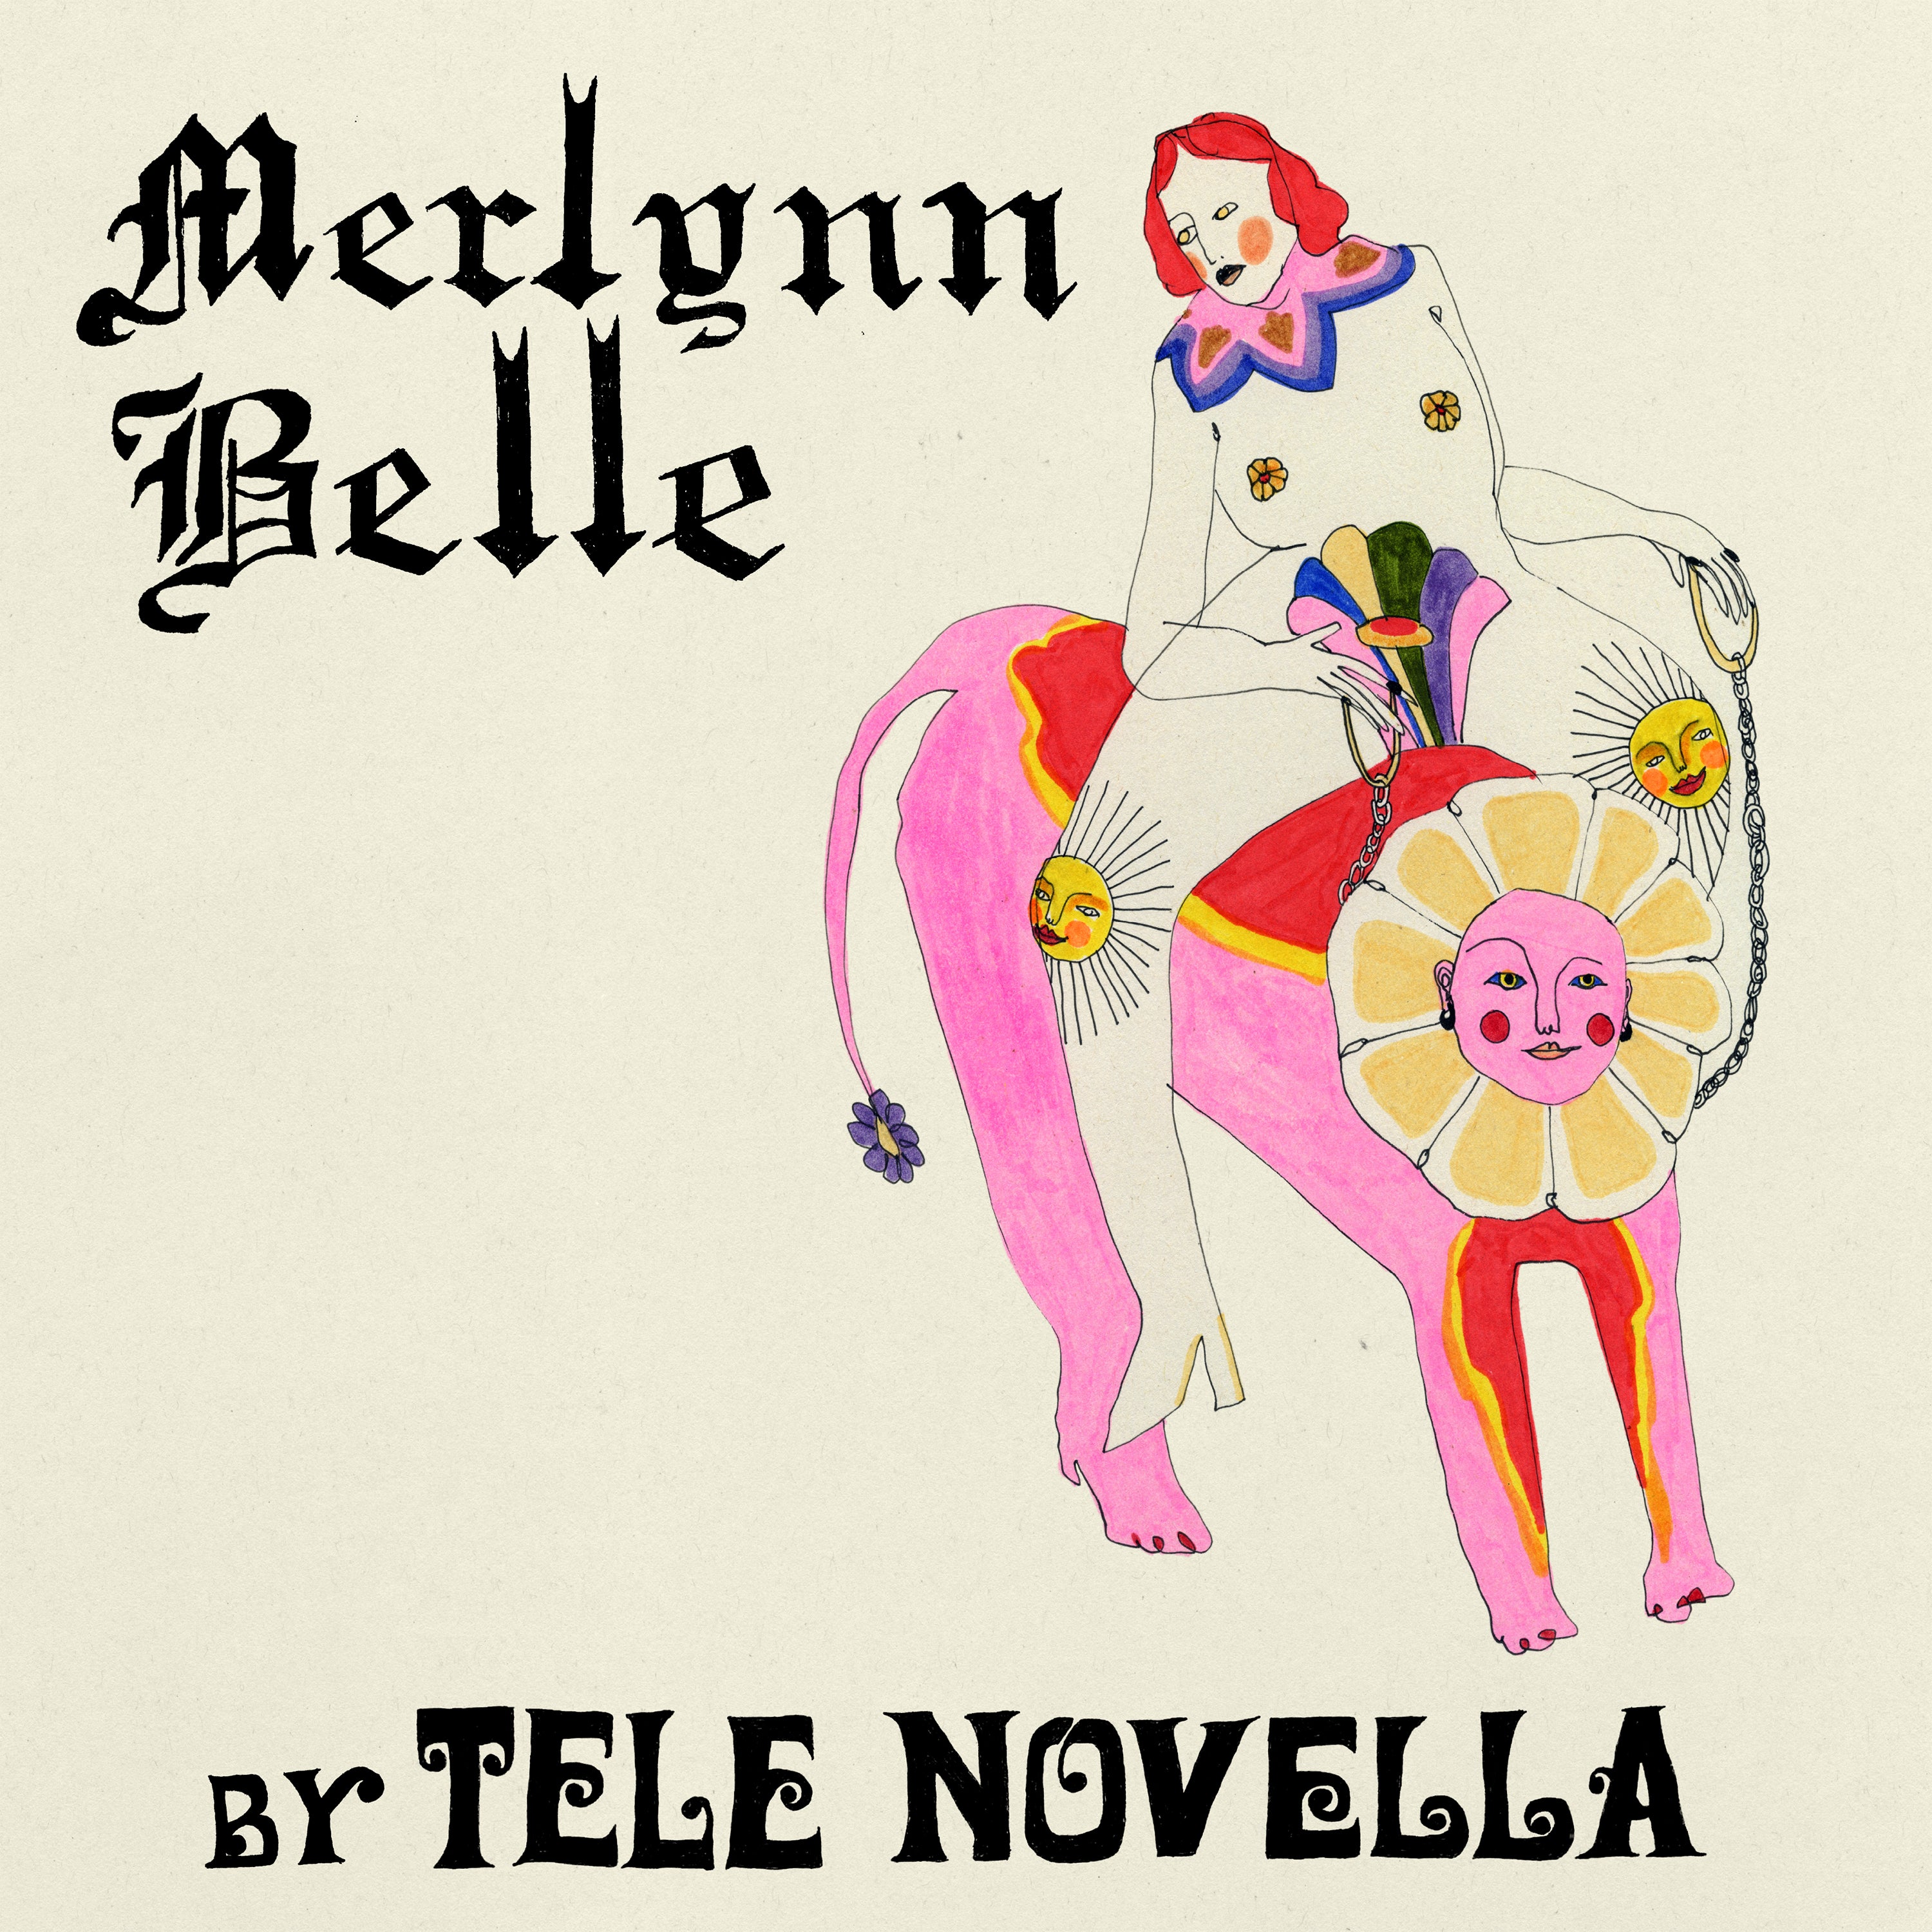 Merlynn Belle